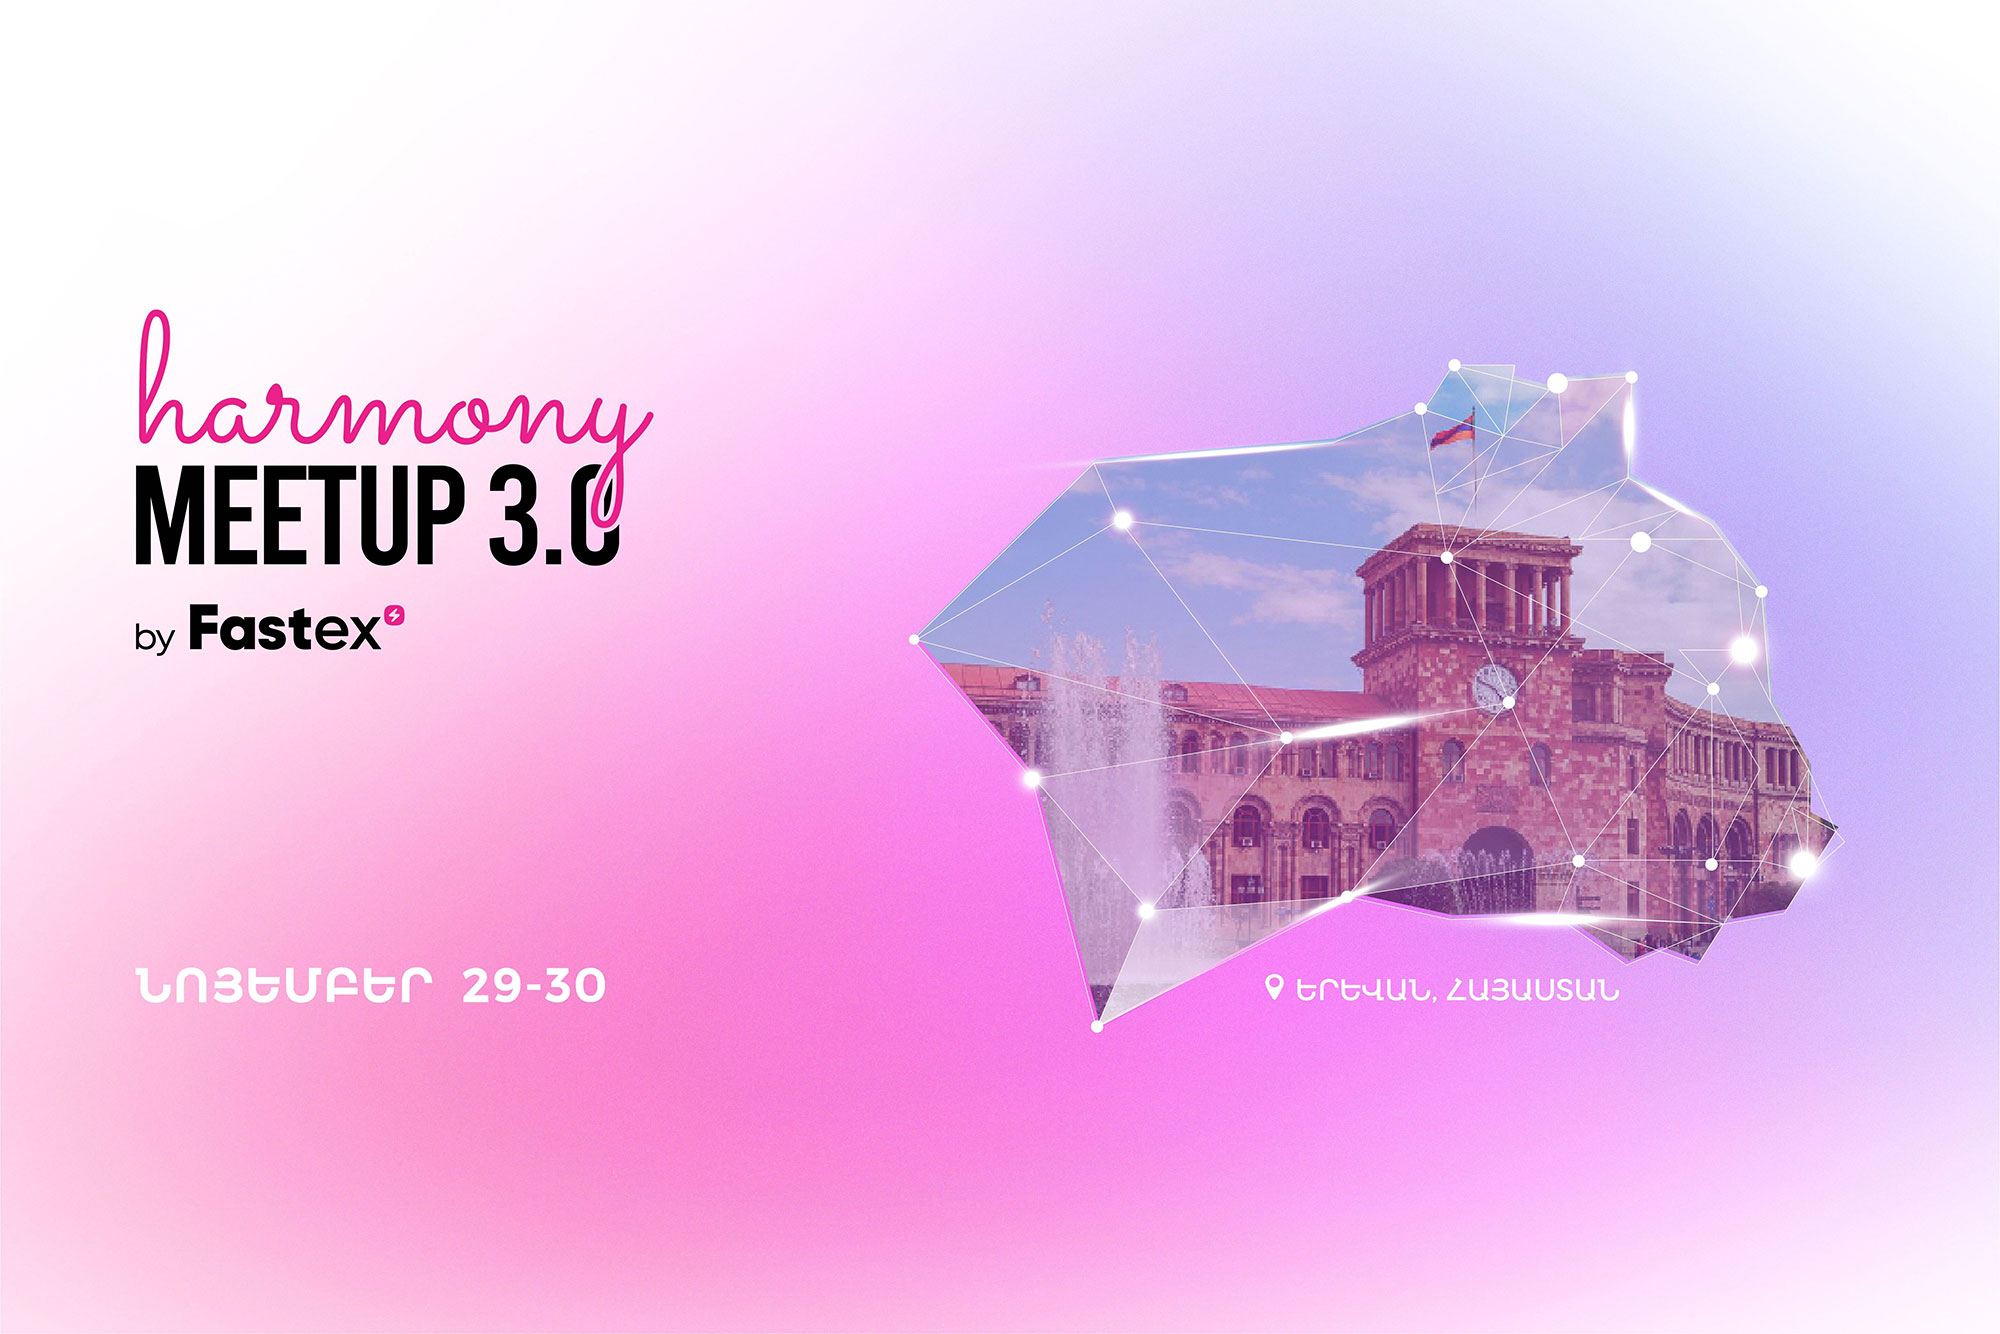 Երևան կժամանեն շուրջ 300 գործարար մասնակցելու Harmony Meetup 3.0 by Fastex համաժողով միջոցառմանը